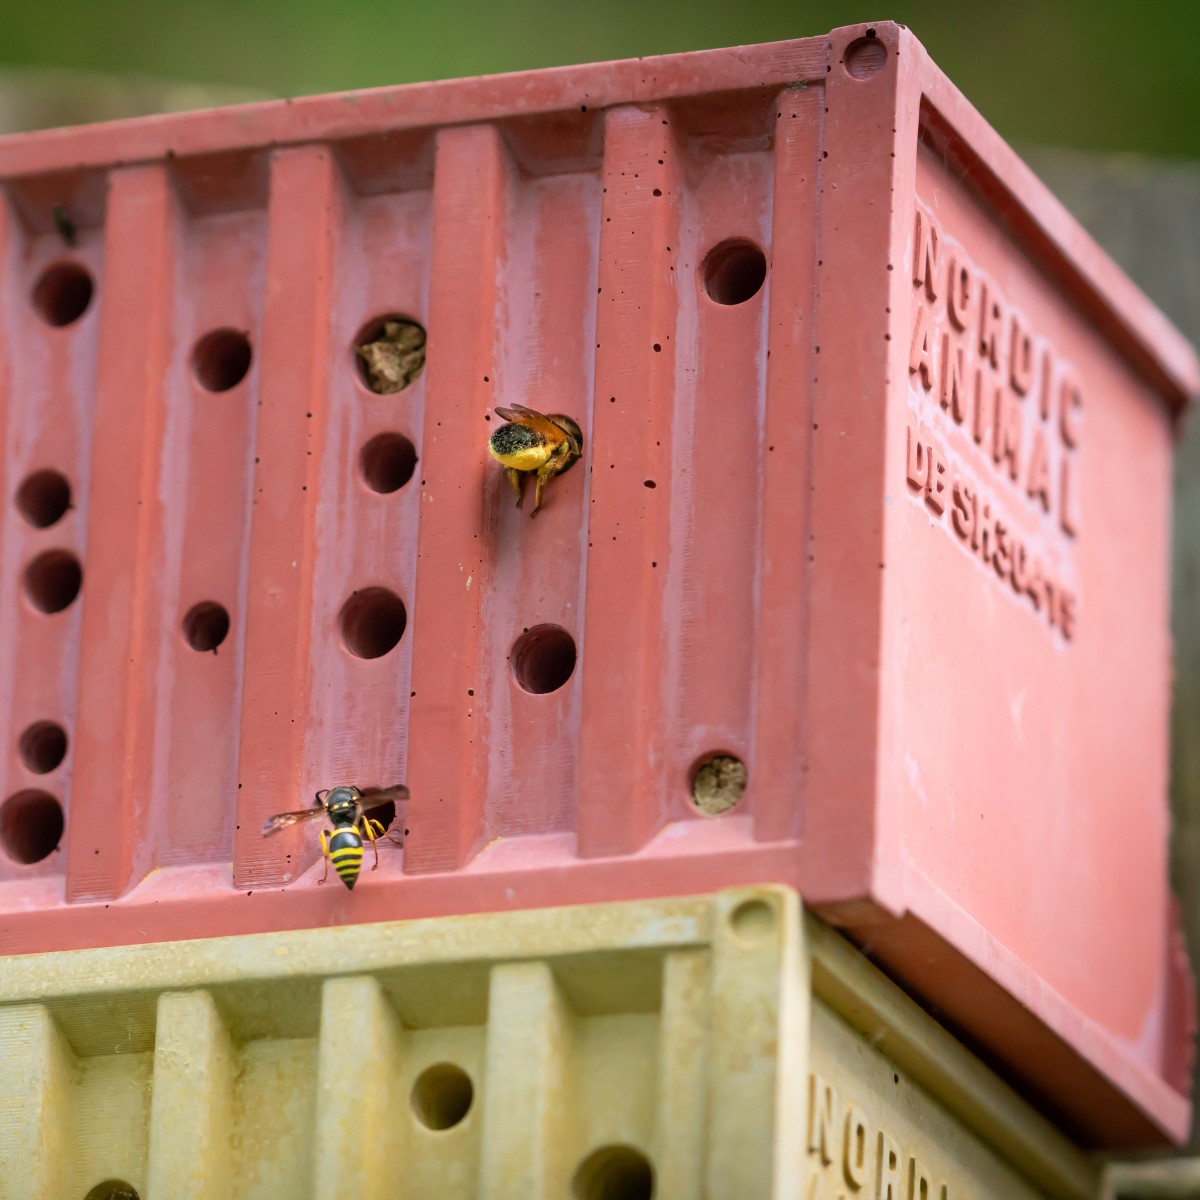 Bienenhotel aus Beton - beecontainer "Blau" im Überseecontainer-Look von Grellroth Design